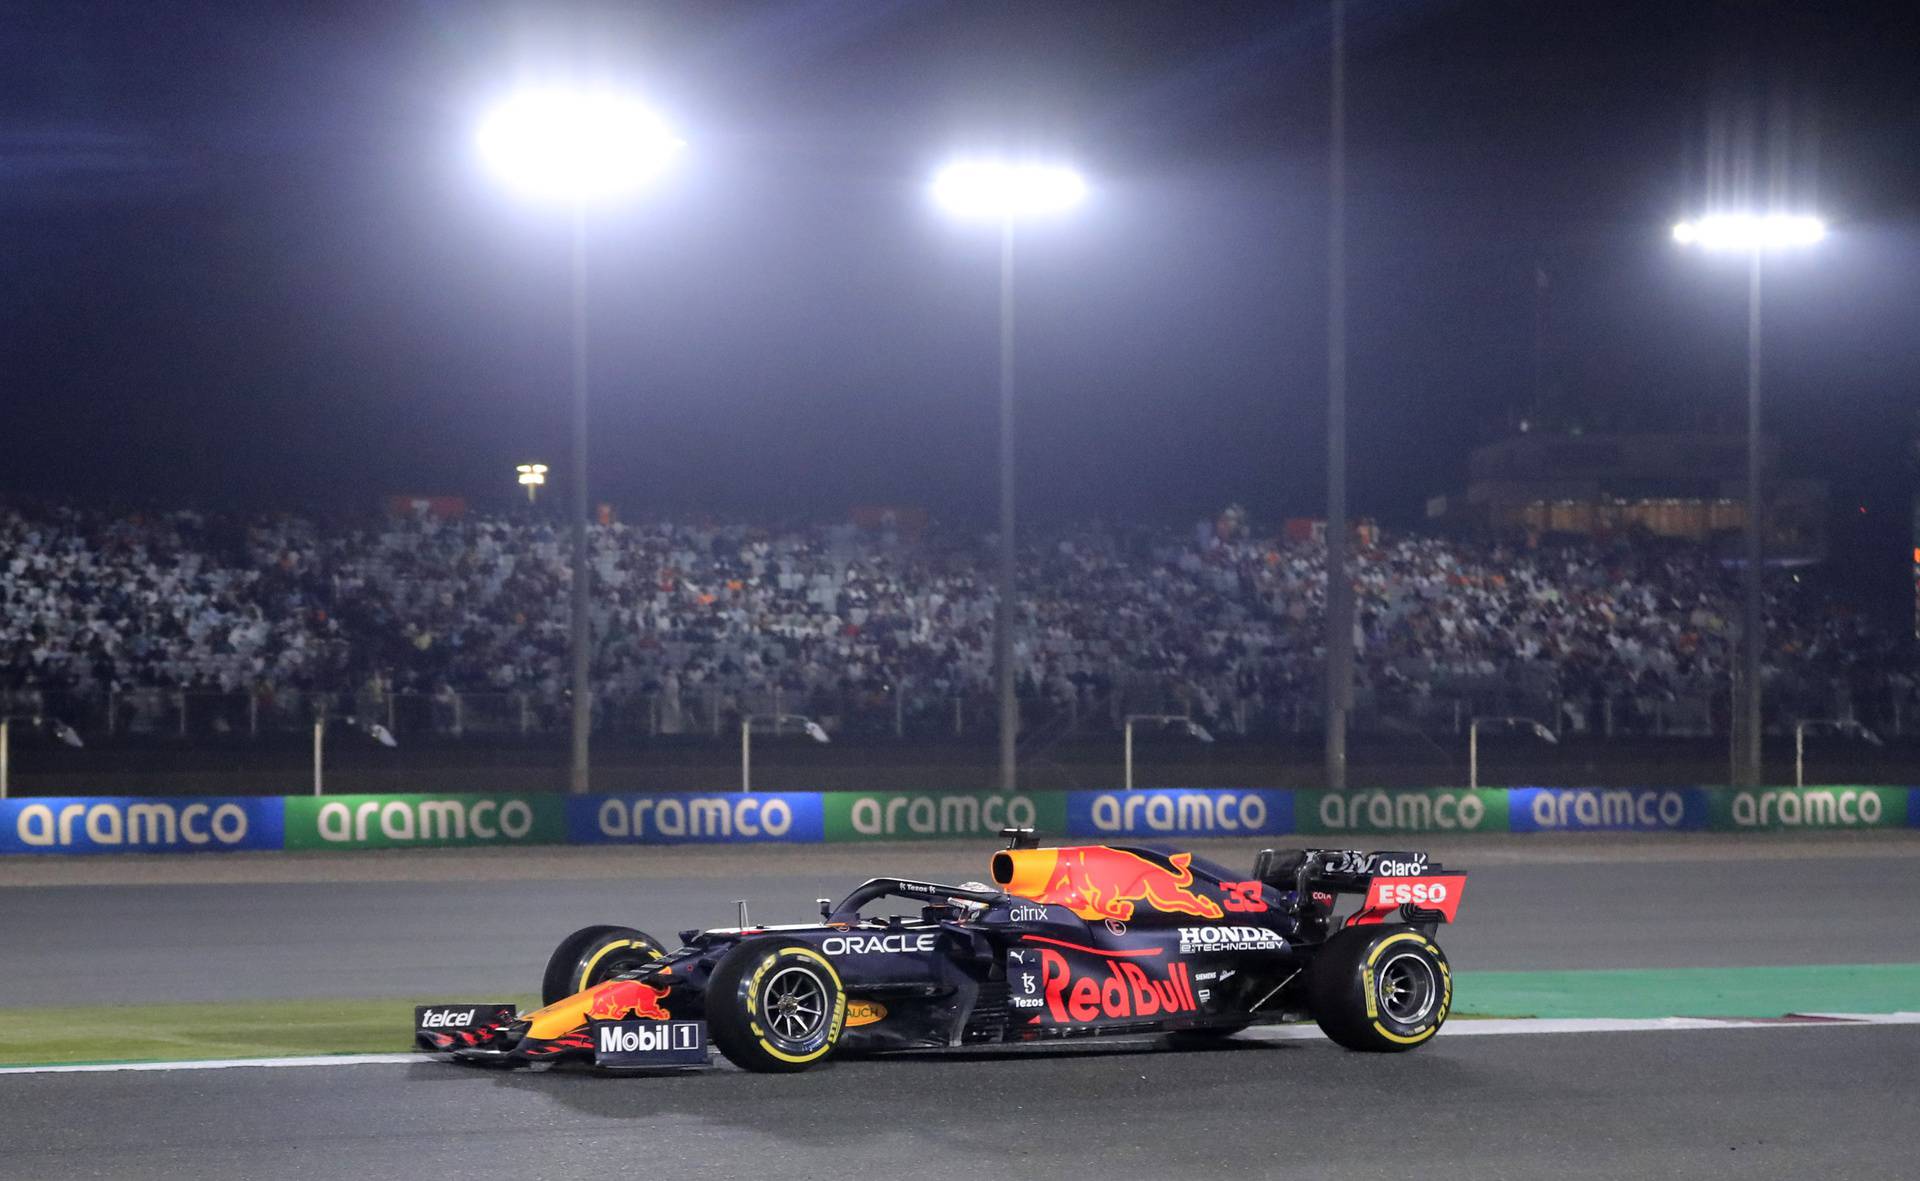 Qatar Grand Prix